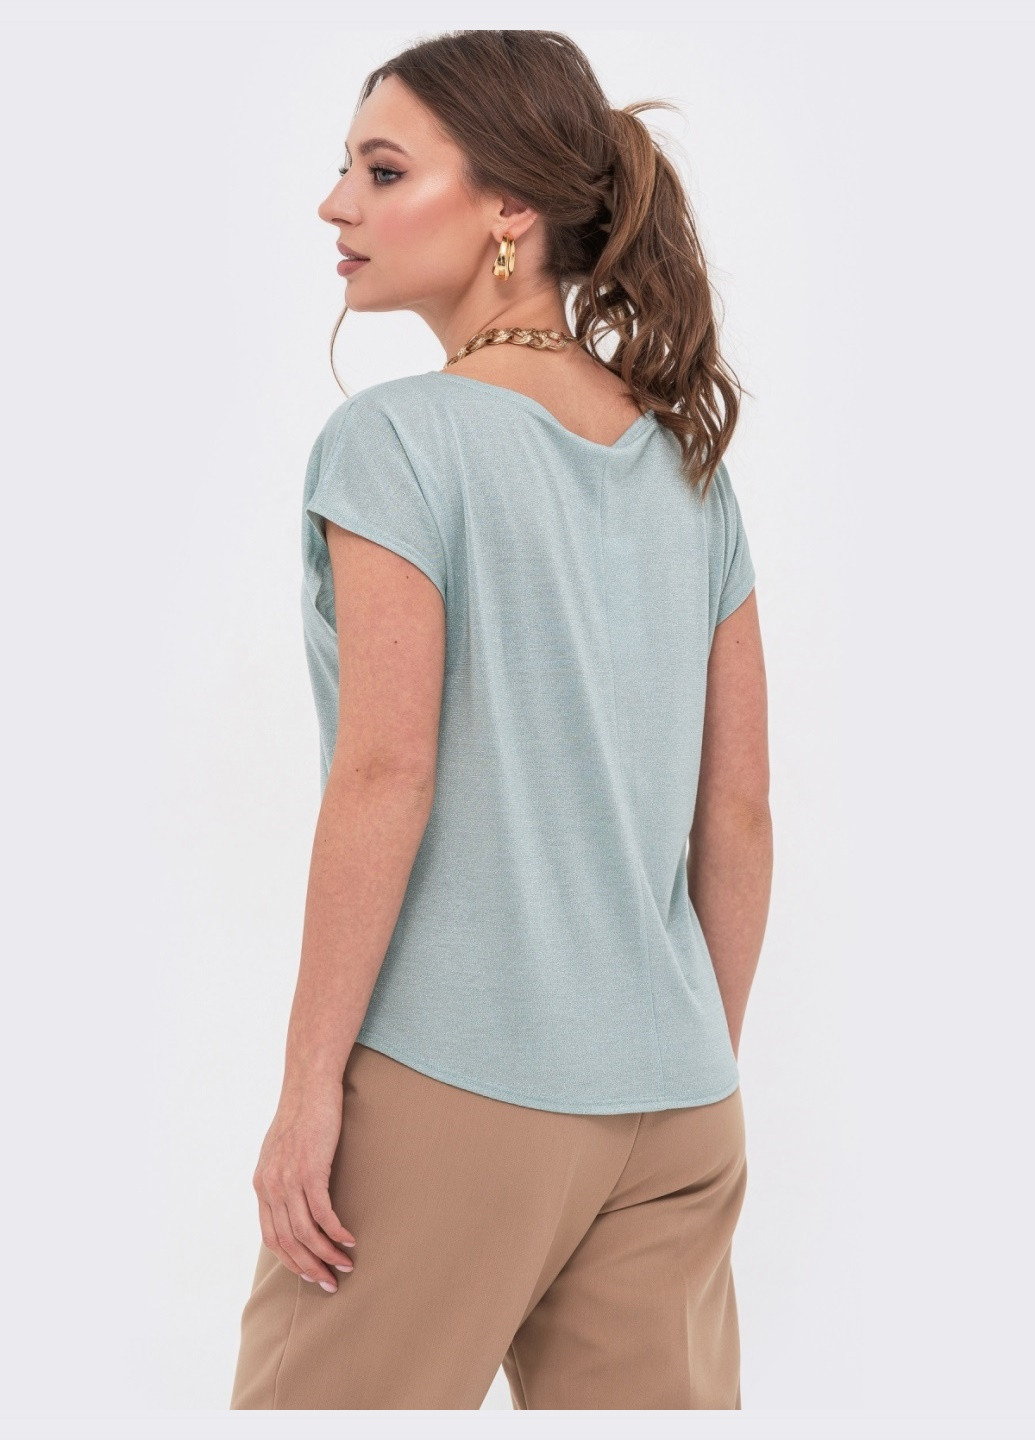 Мятная трикотажная блузка мятного цвета с люрексом Dressa